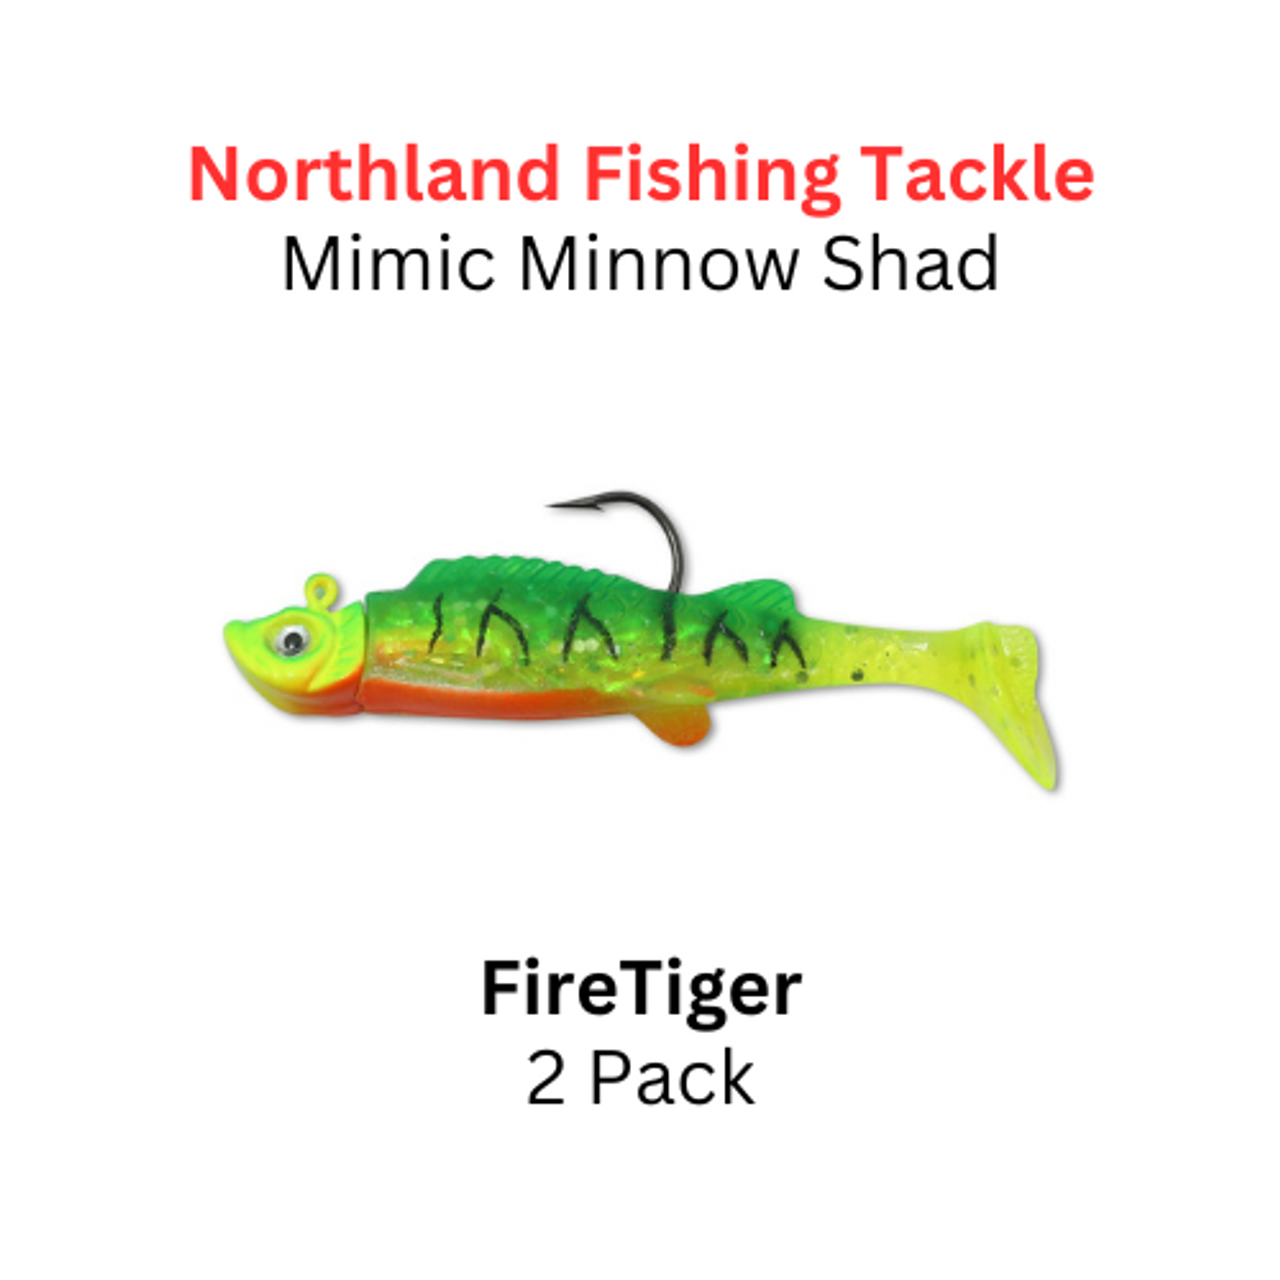 Northland Fishing Tackle 3/8oz Firetiger Mimic Minnow Shad